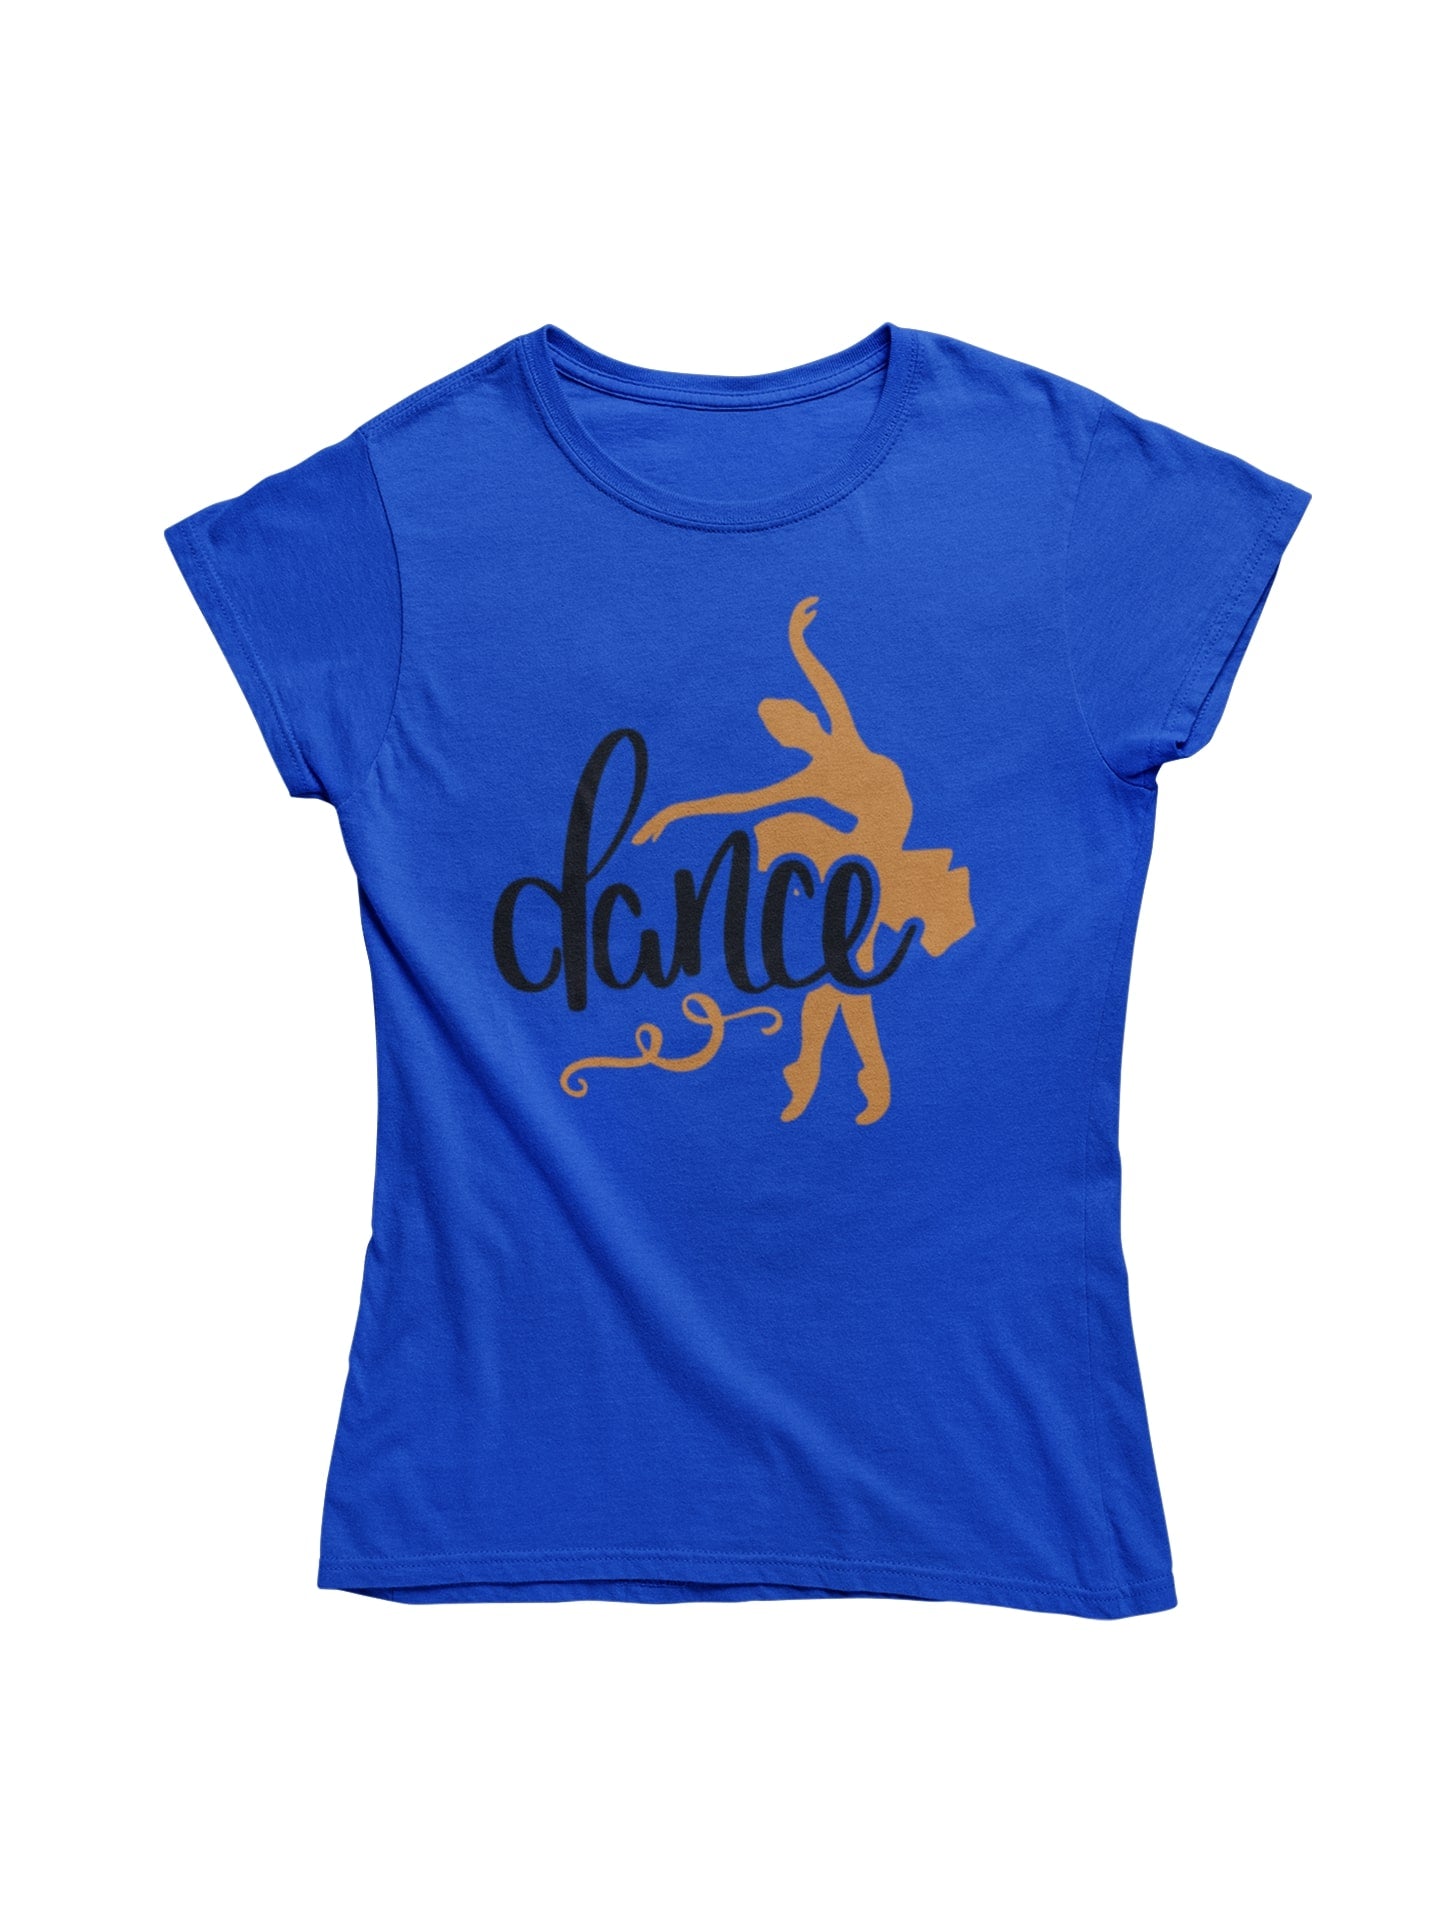 thelegalgang,Ballet Dance Inspired T shirt for Women,WOMEN.